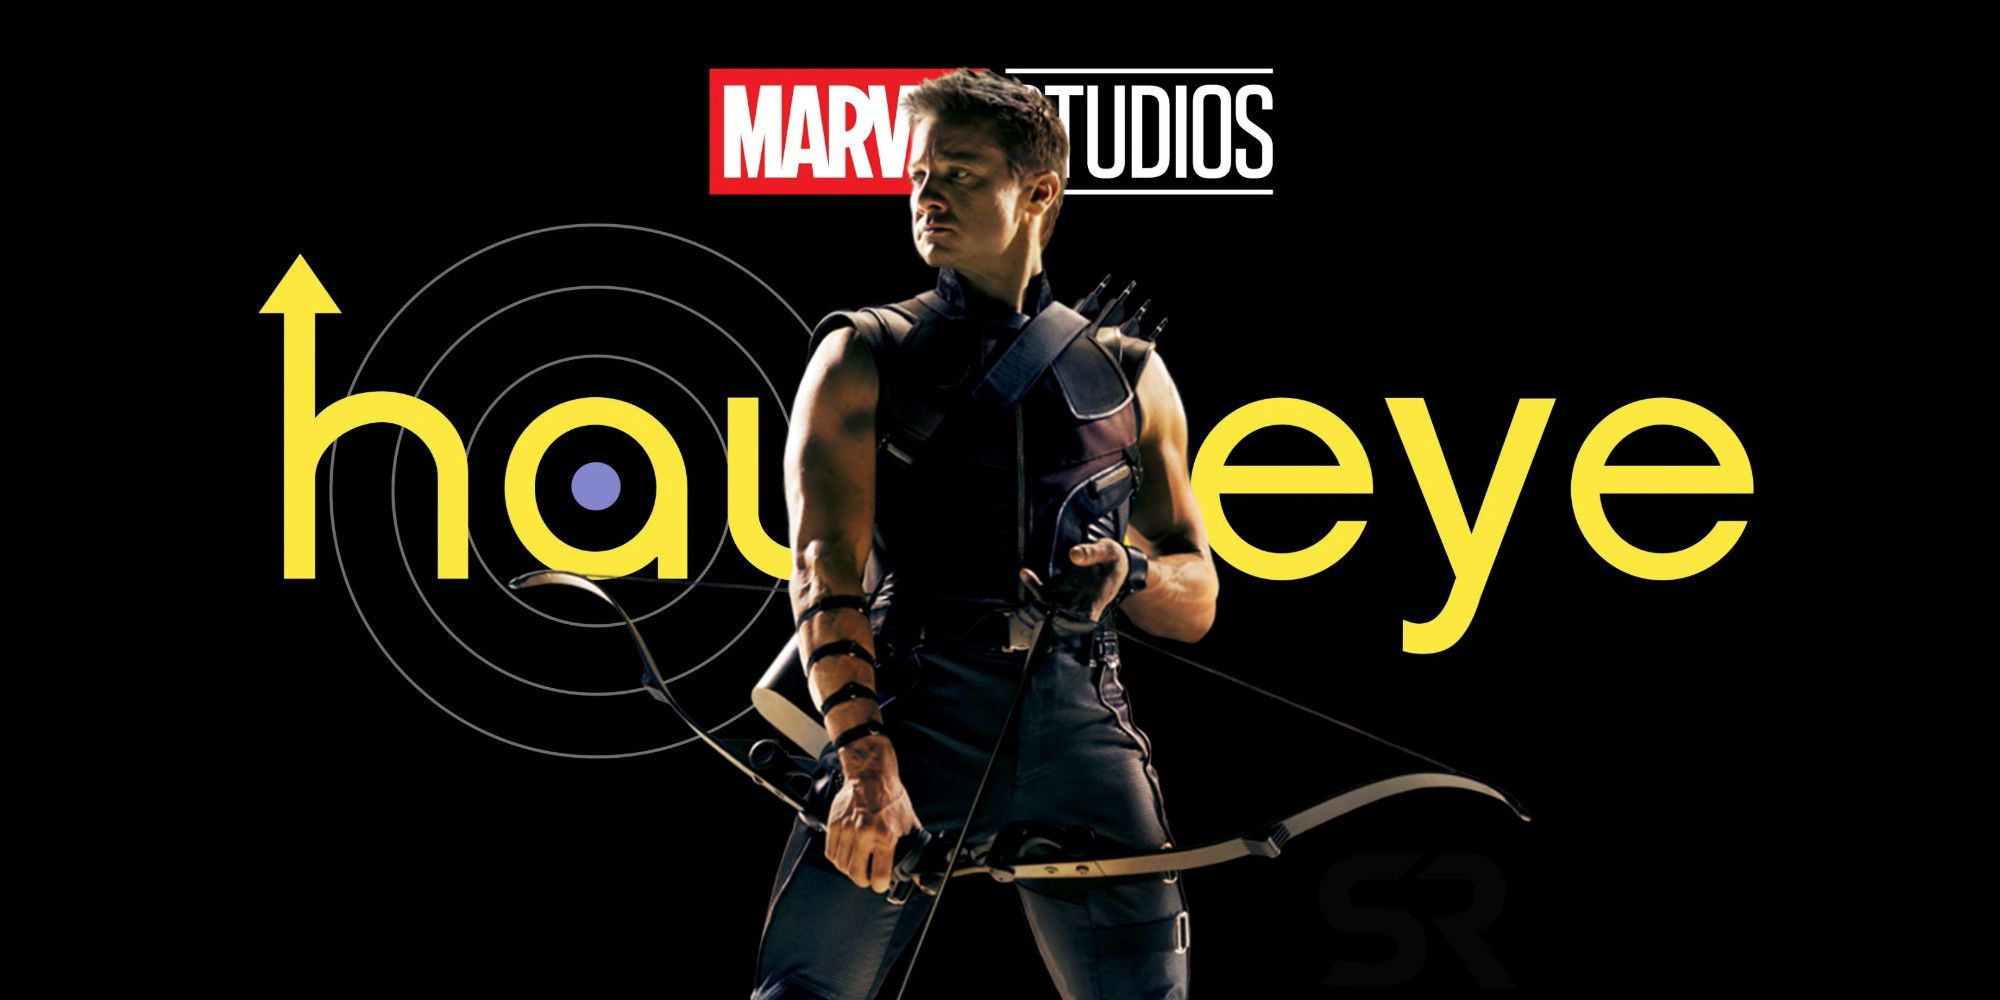 Hawkeye release date